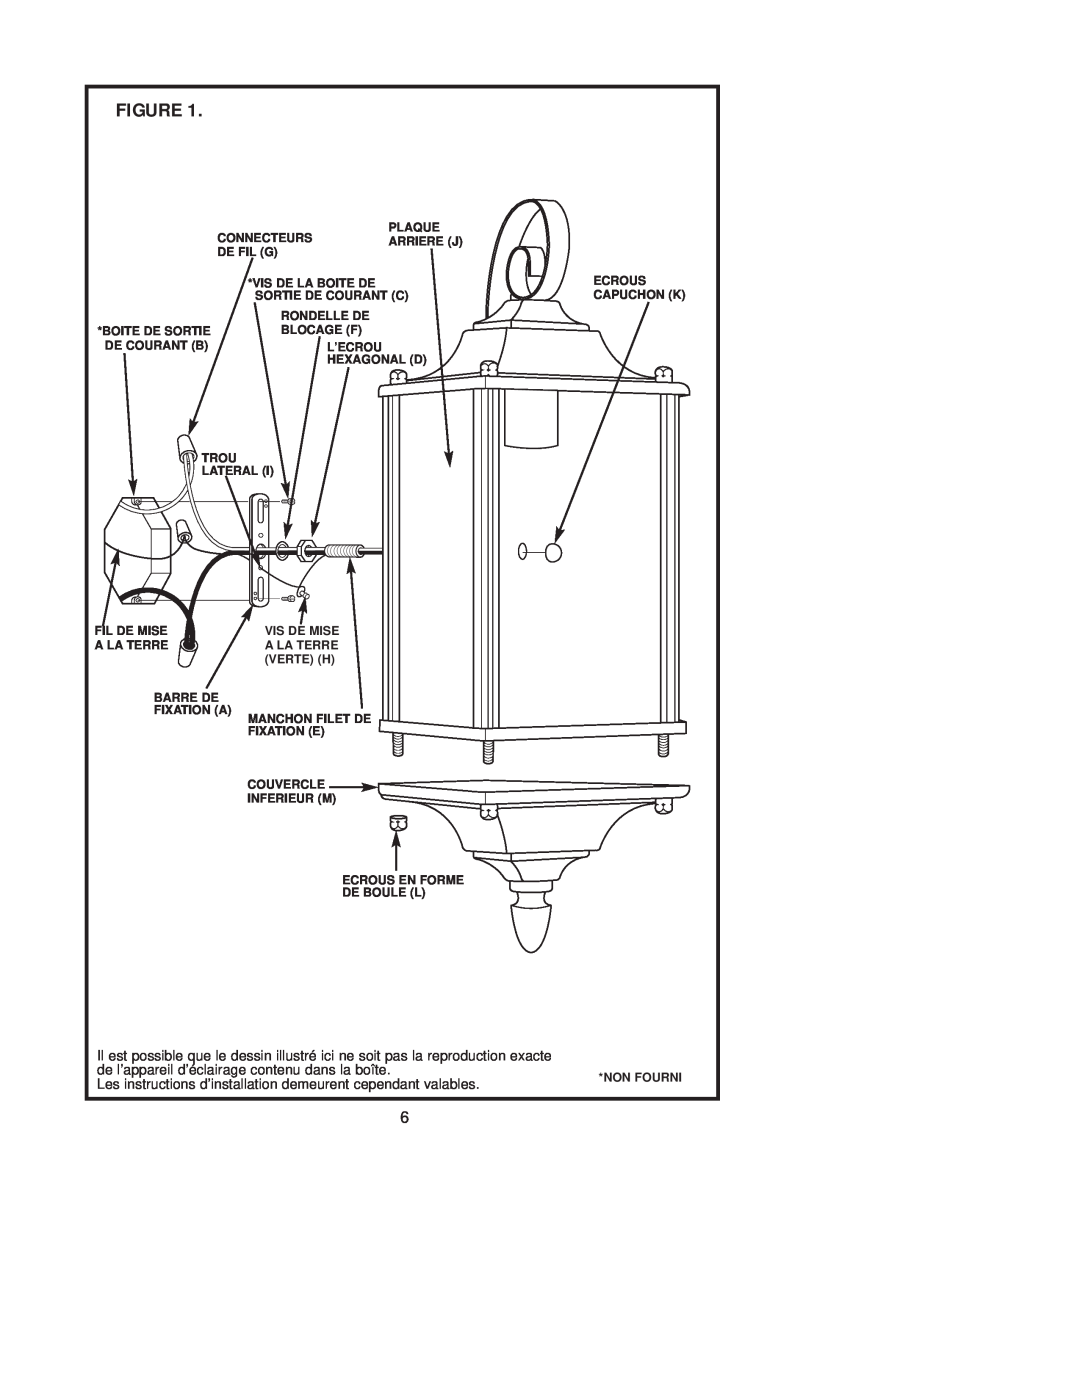 Westinghouse W-181 owner manual de l’appareil d’éclairage contenu dans la boîte 